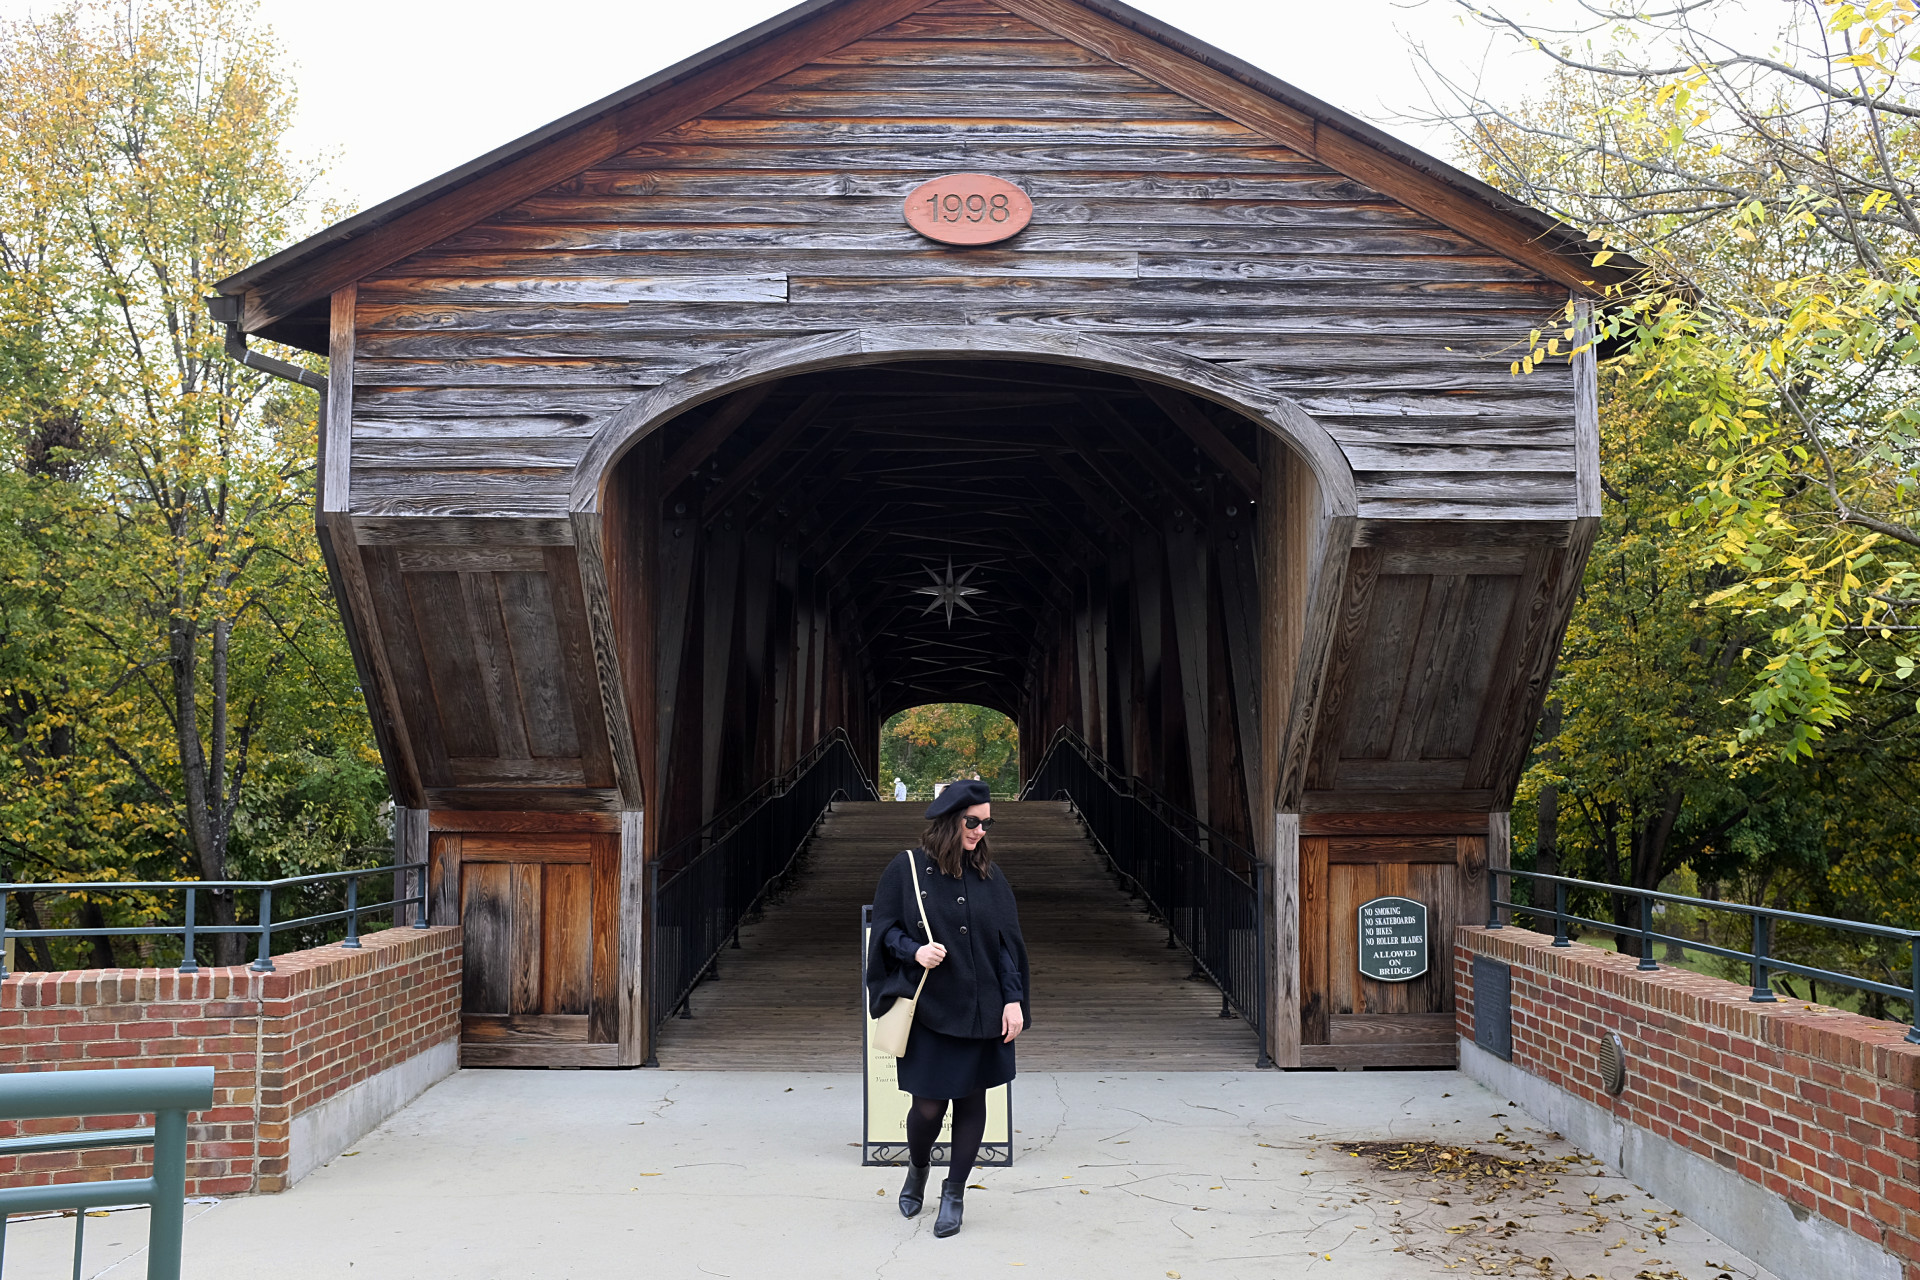 Alyssa stands in front of the bridge in Old Salem